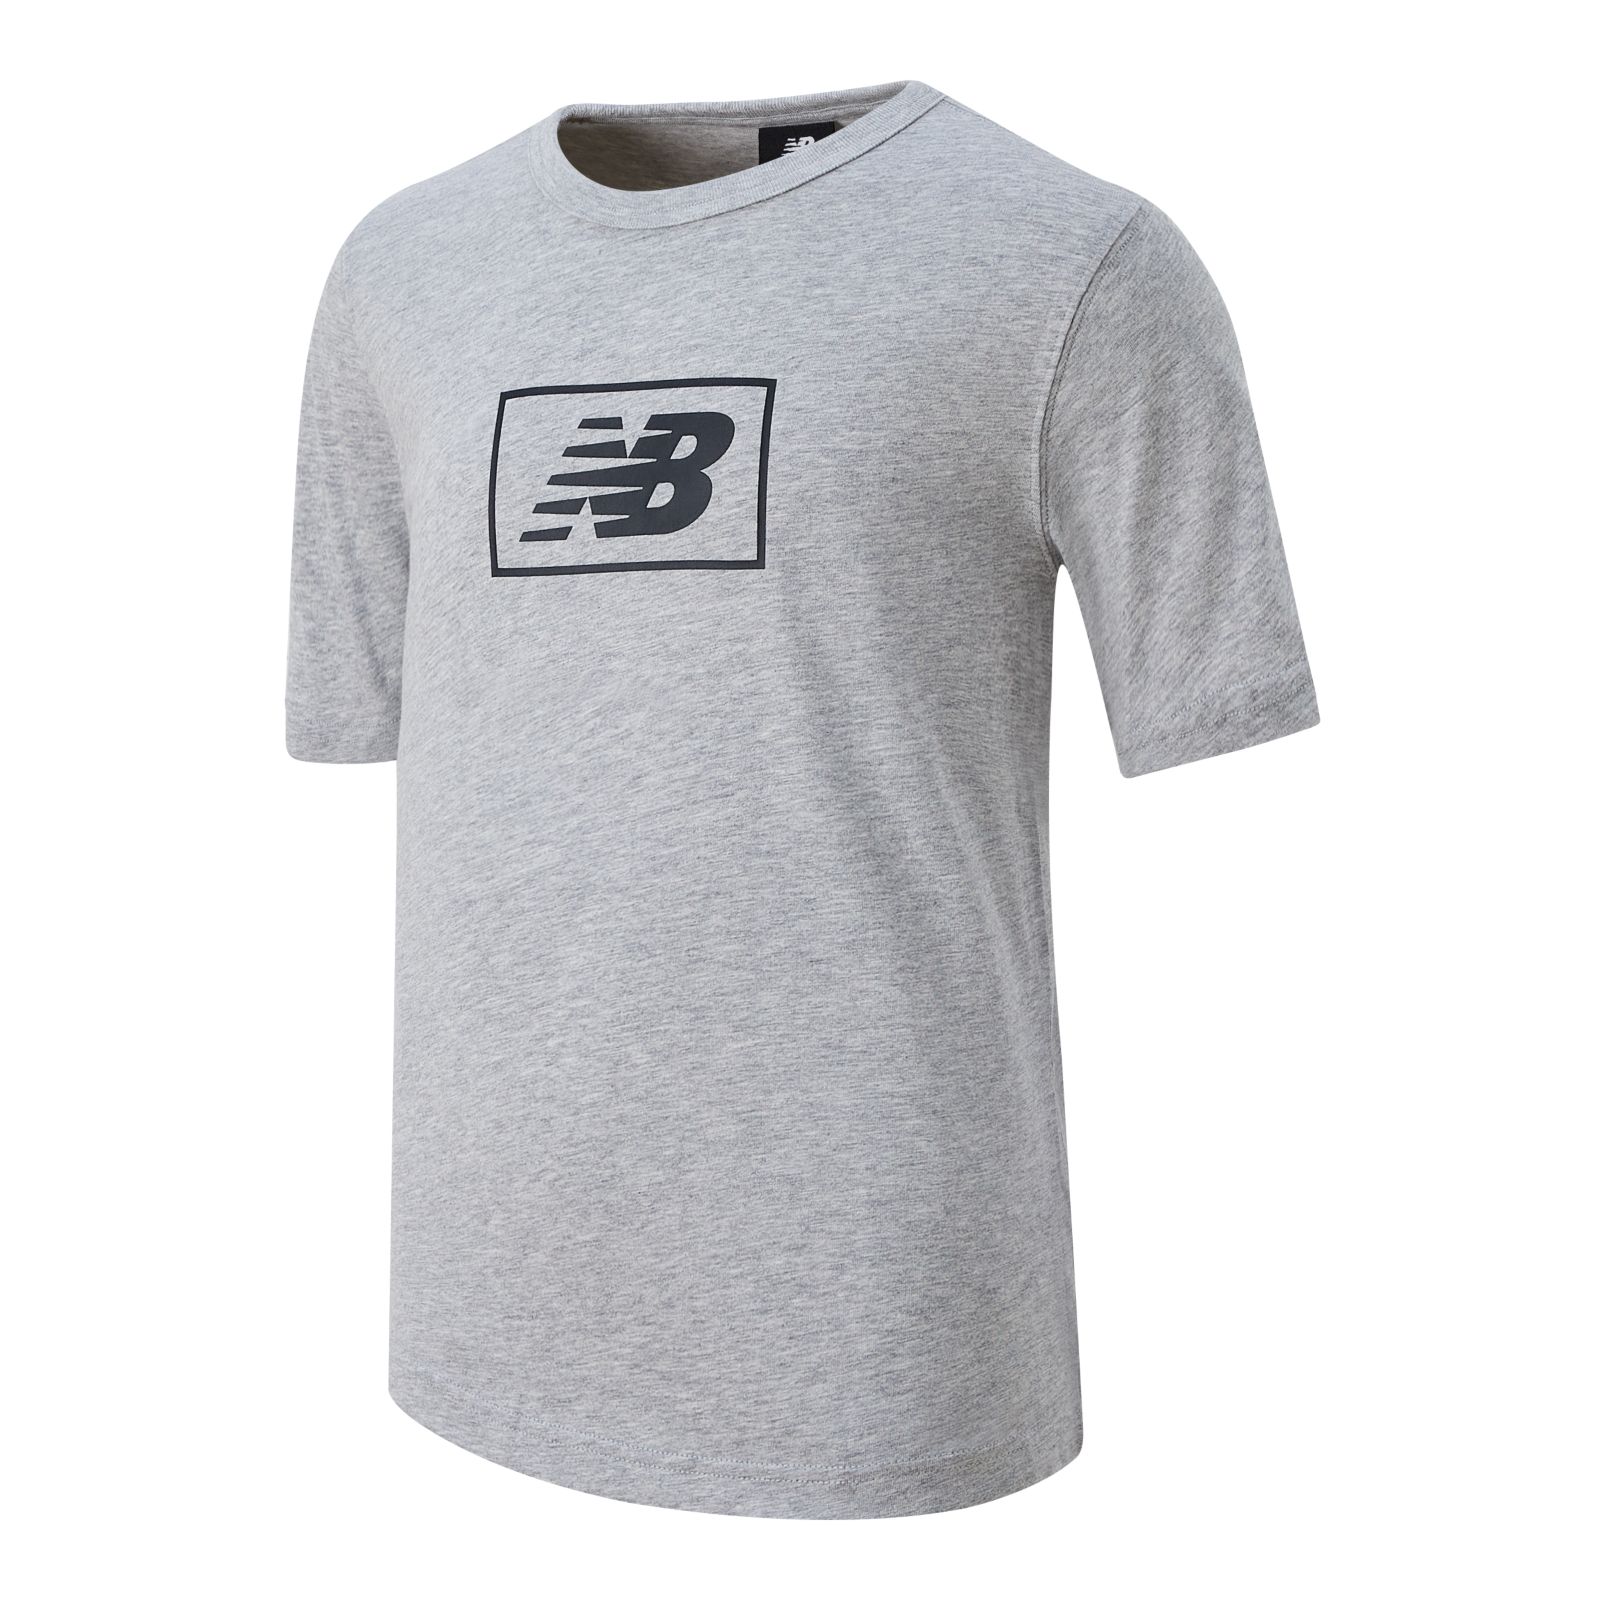 NB Essentials Logo T-Shirt - New Balance